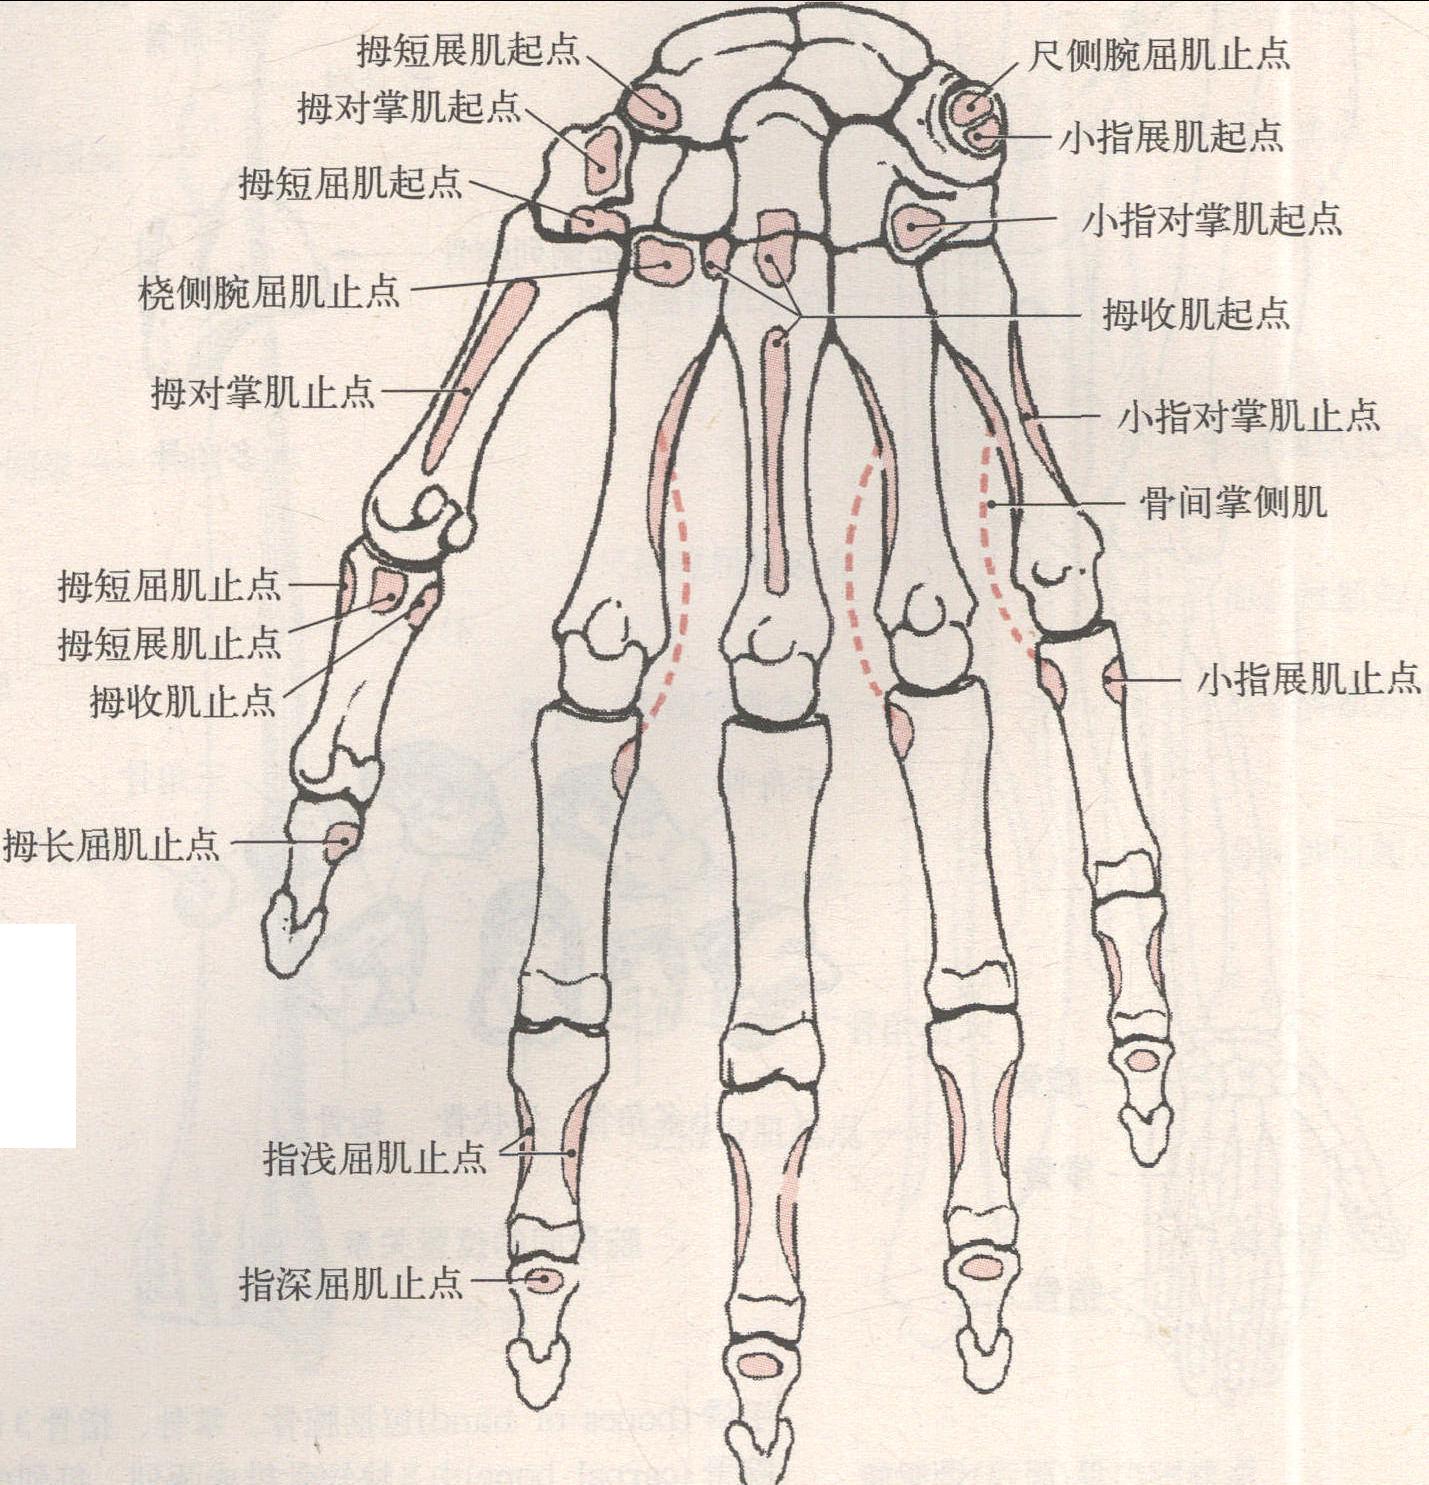 【解剖学】#手骨(手の骨)の構造を知っておこう【スケッチ】 | ナツヲカケル